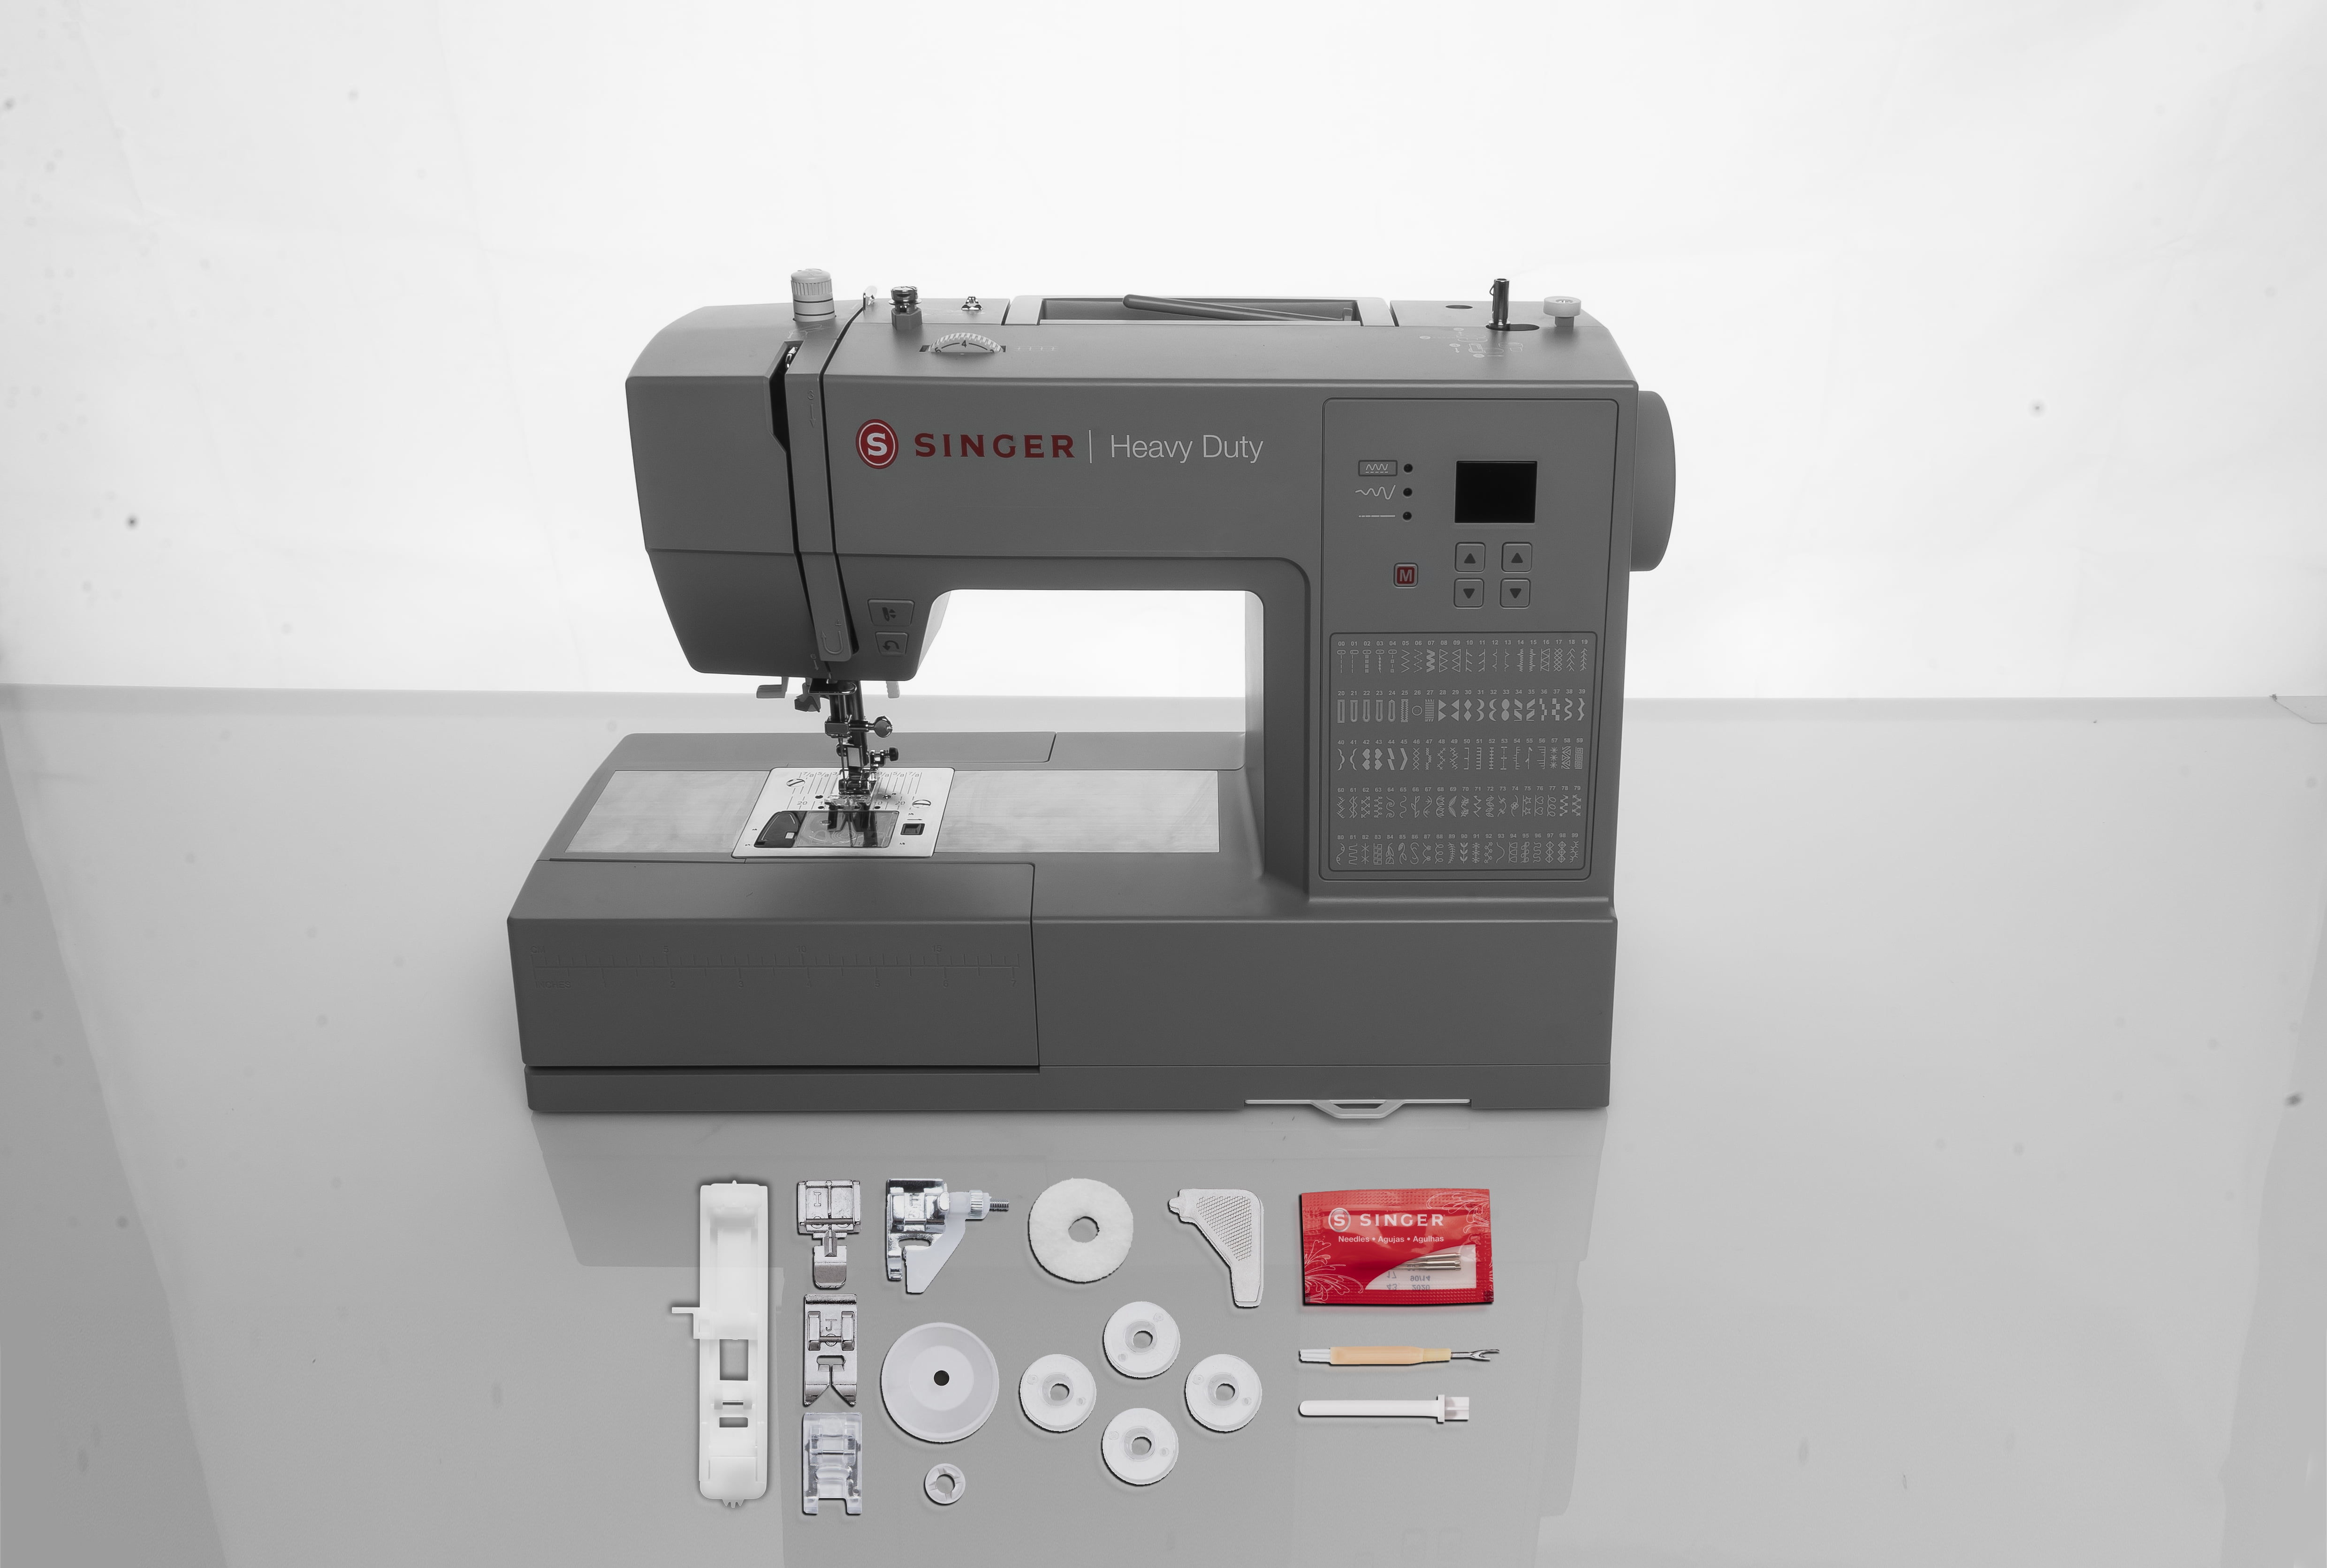 Singer Sewing Machine Heavy Duty HD6605C Computerized BNIB